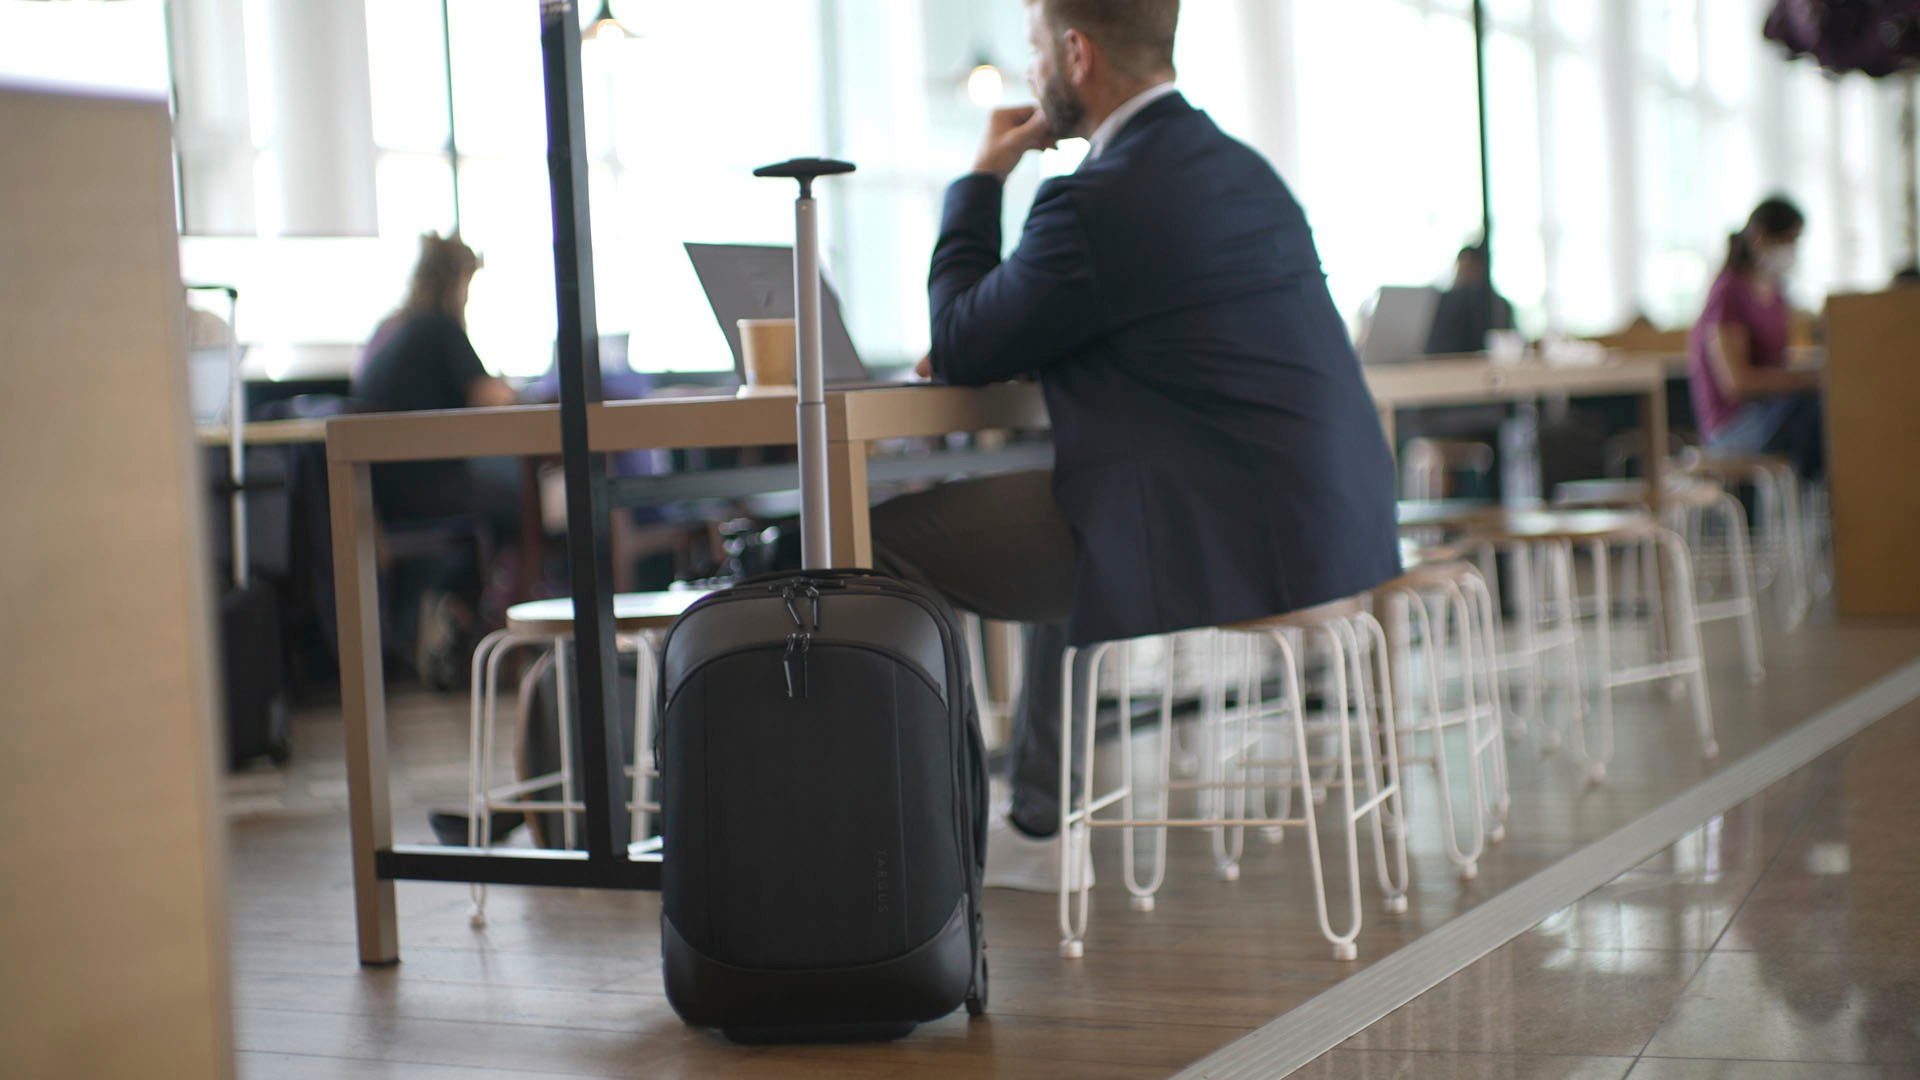 Targus Laptoptasche Mobile Tech 15.6 Rolling Traveller Backpack